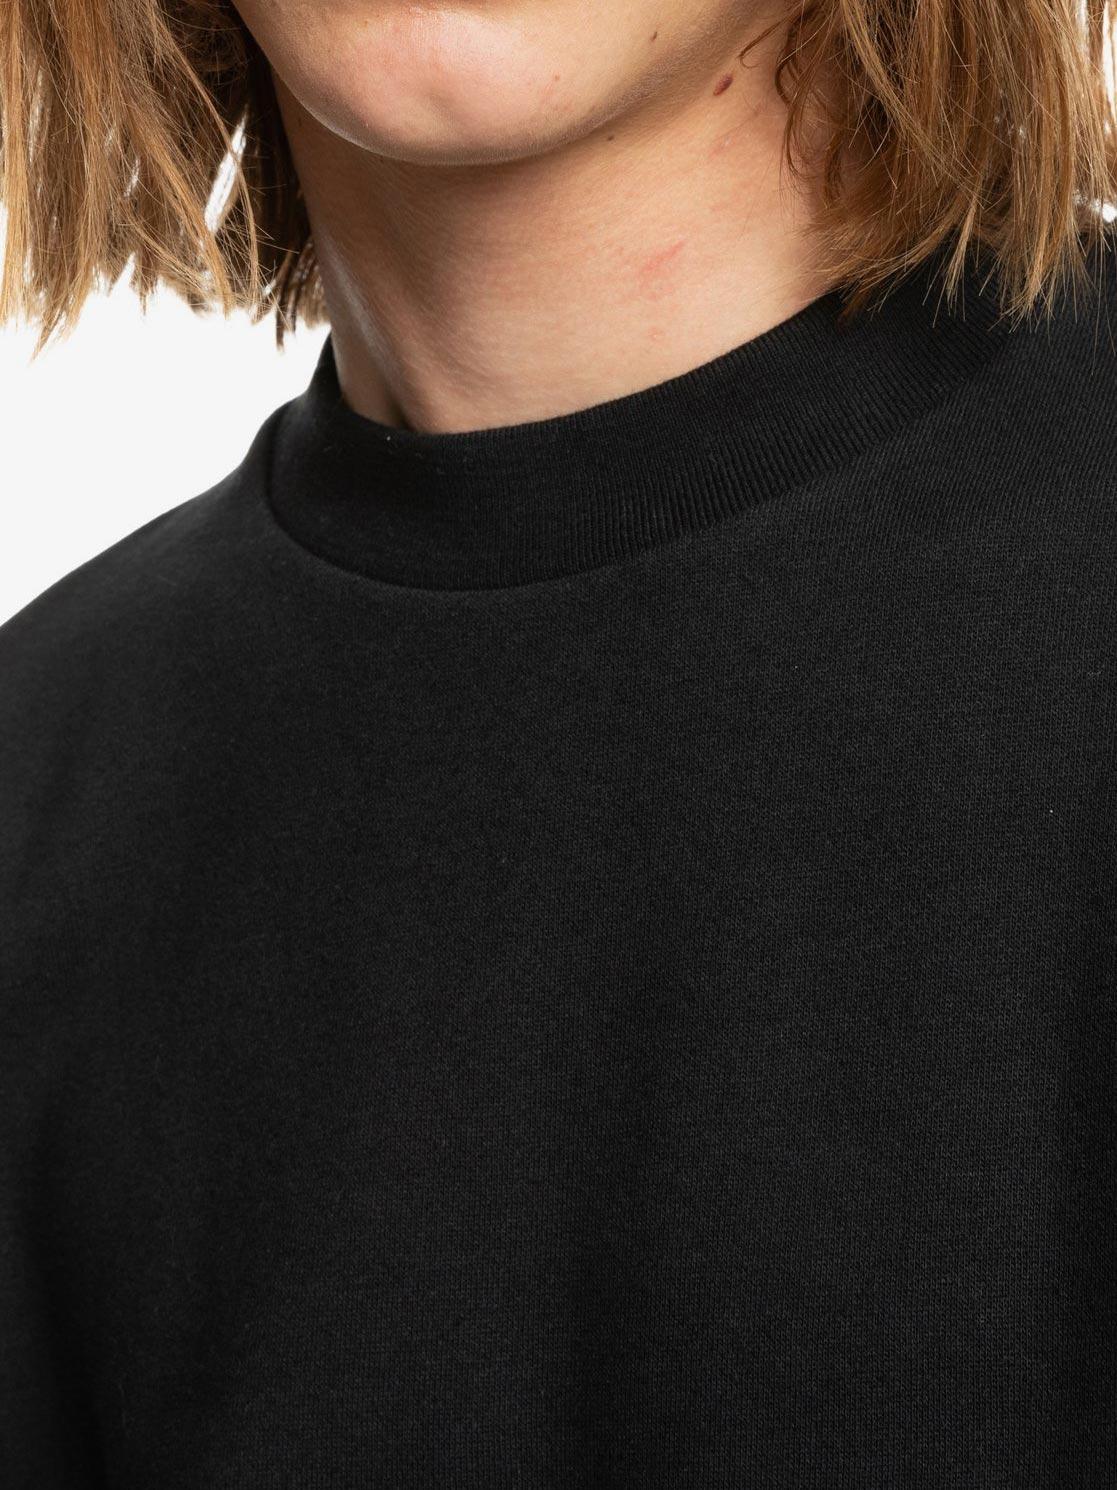 Slike QUIKSILVER Muški džemper Essentials crni